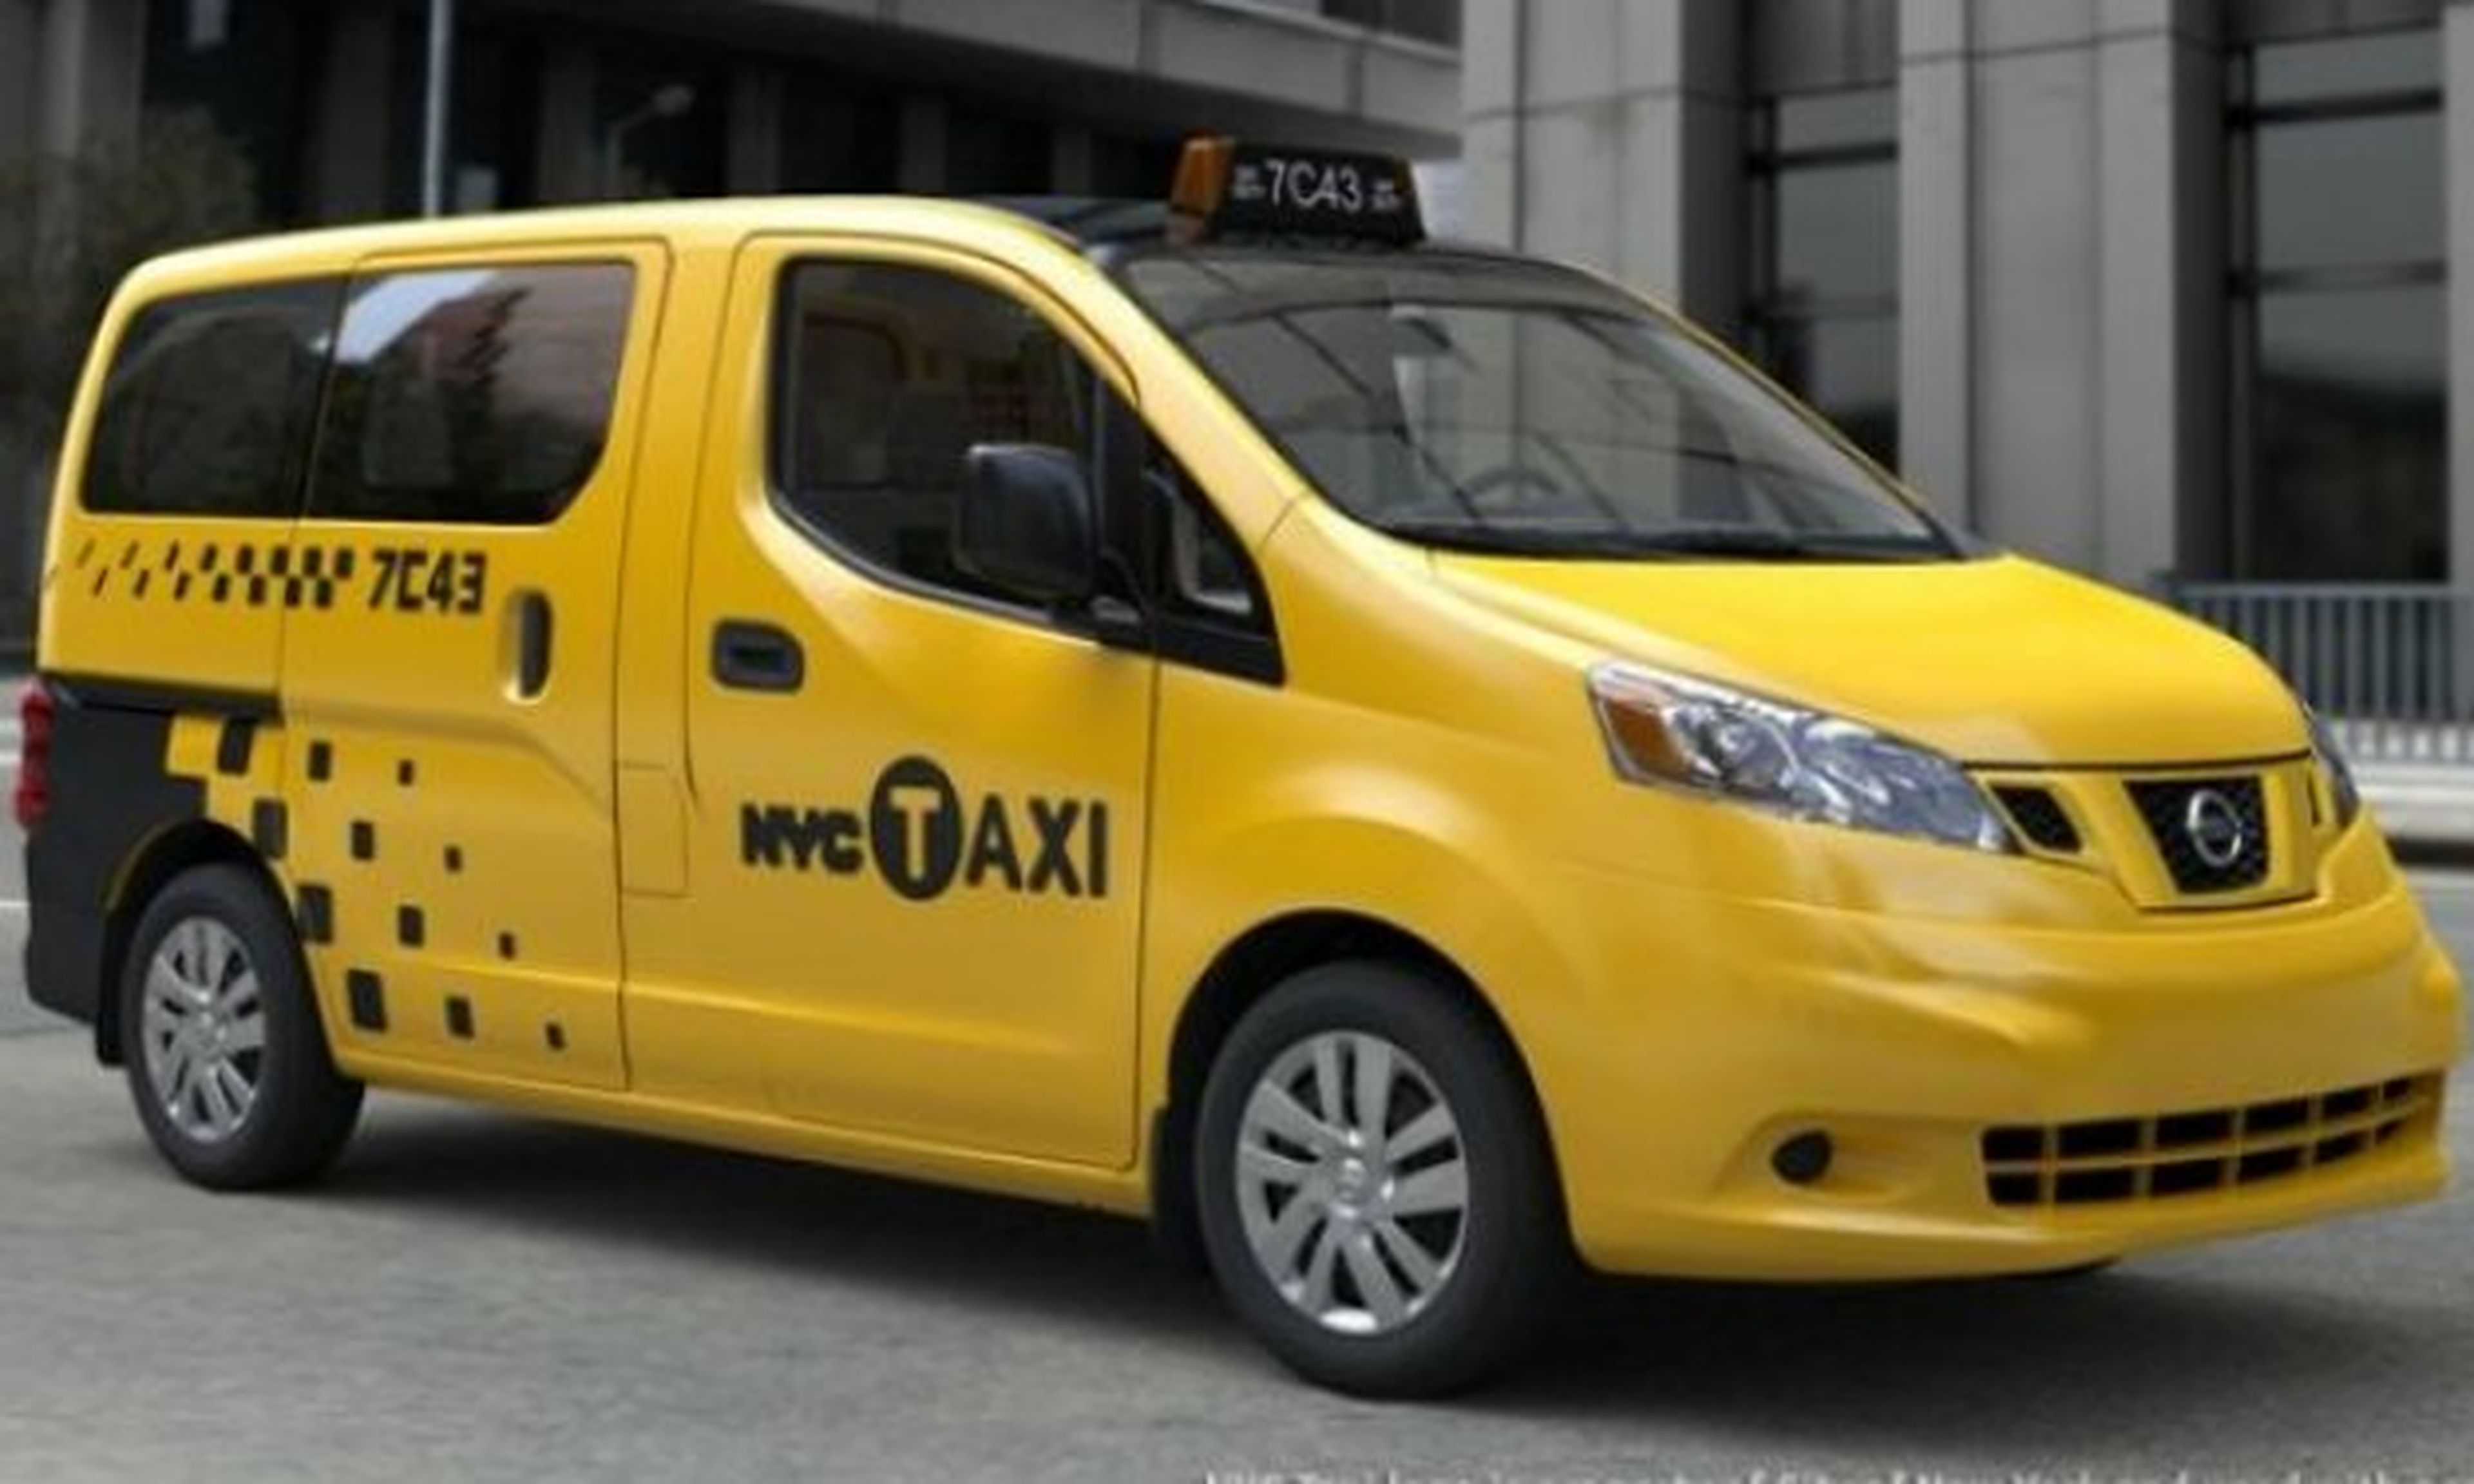 nissan taxi nueva york